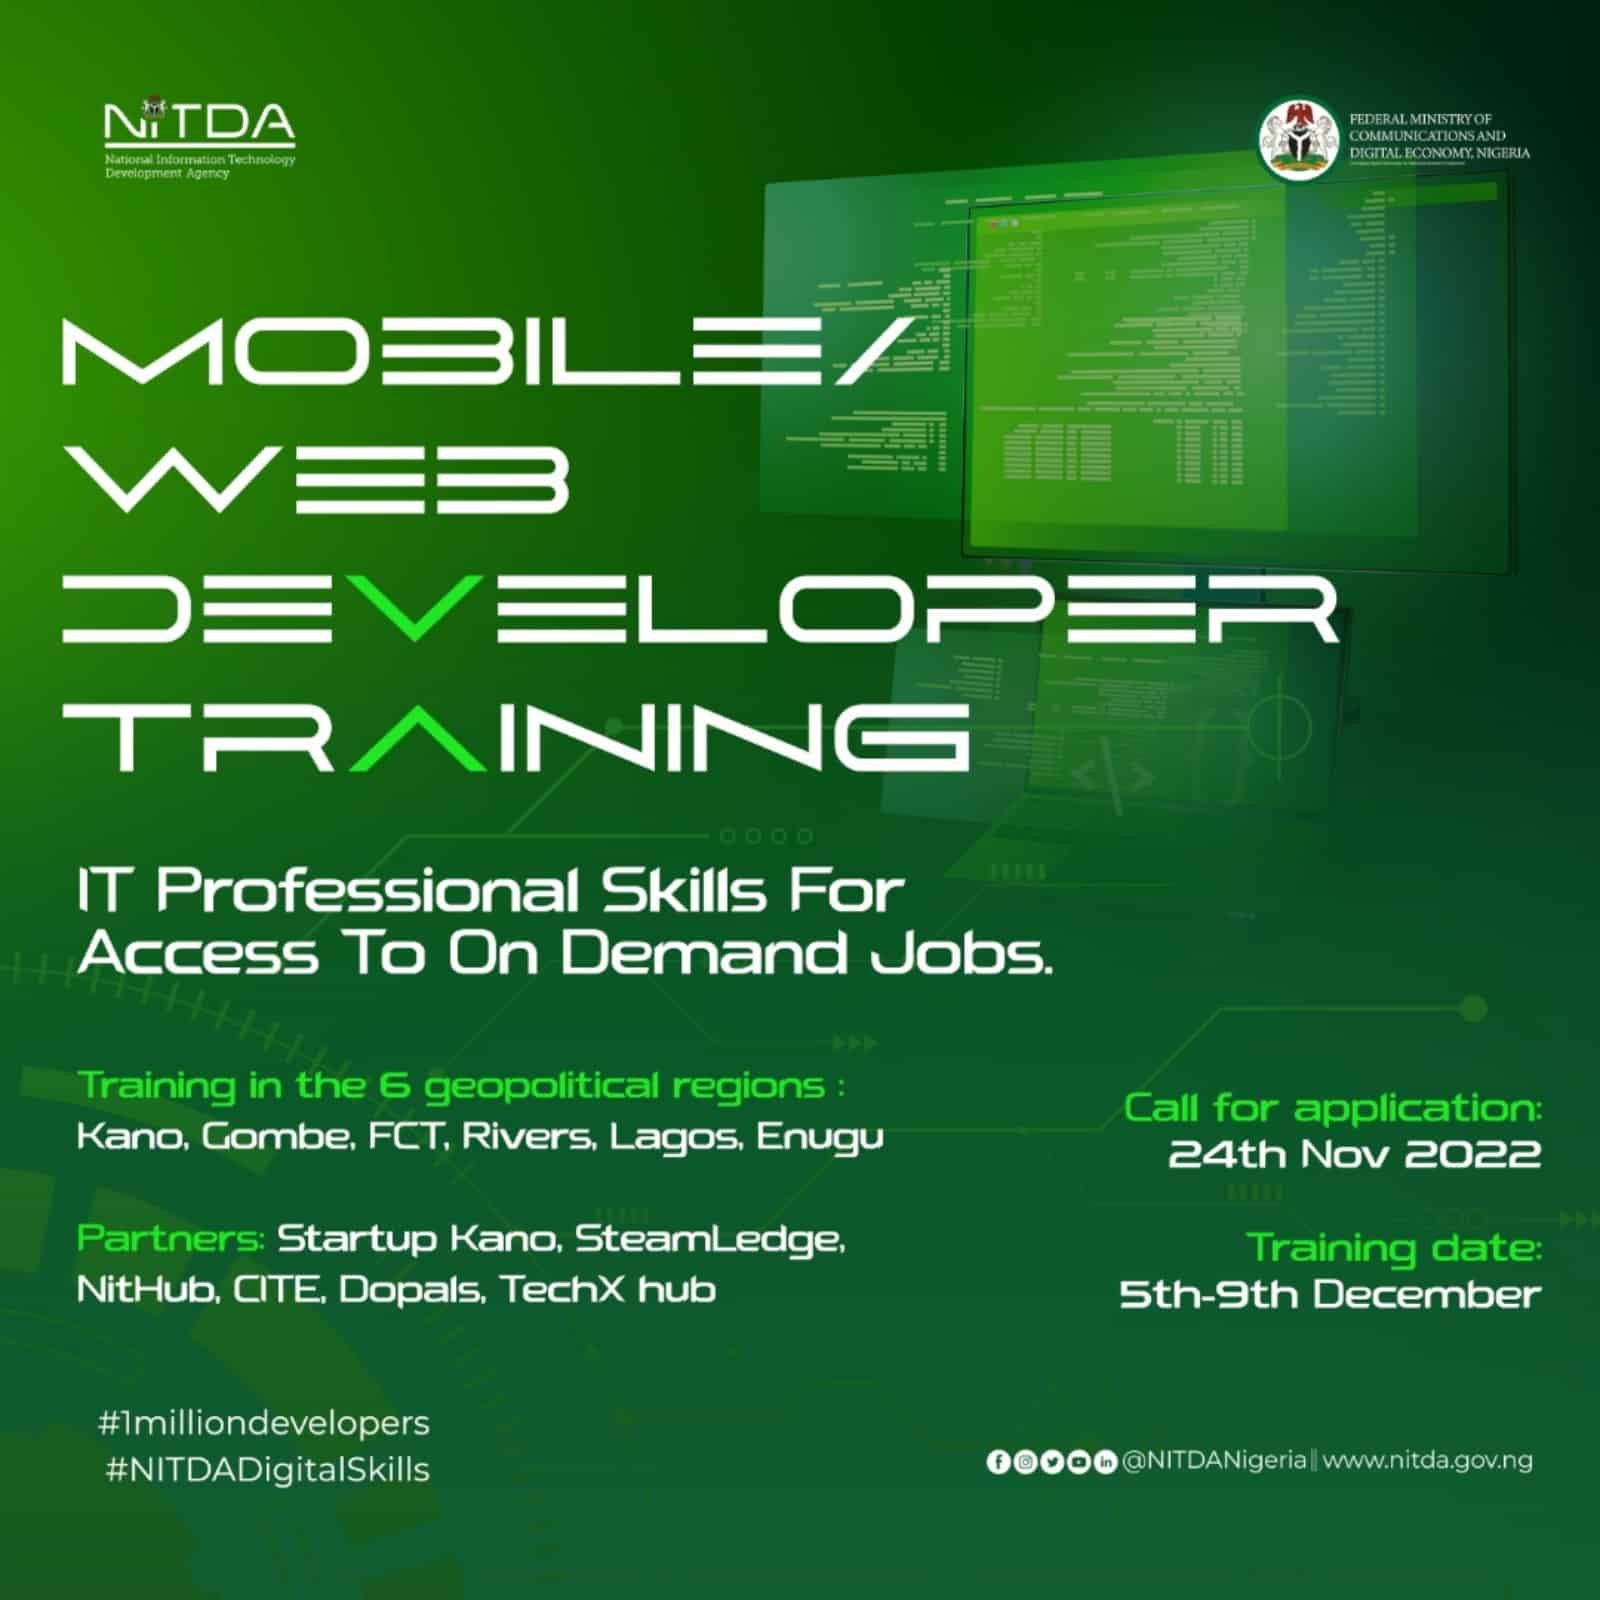 NITDA 2022 Mobile/Web Developer Training